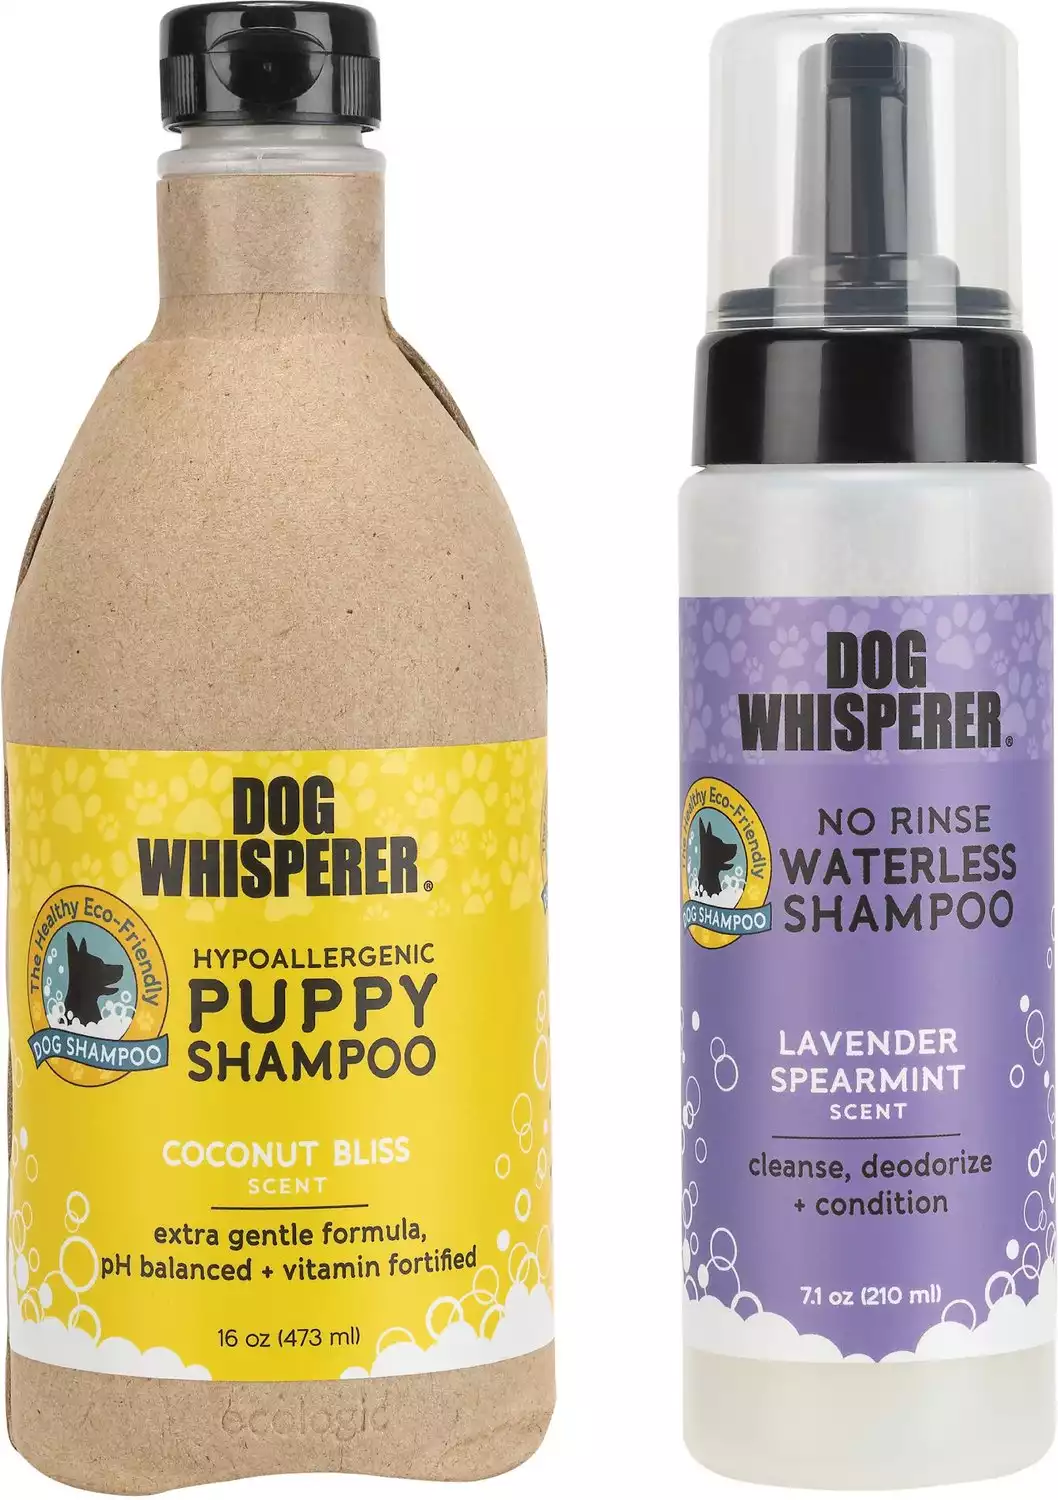 Dog Whisperer Hypoallergenic Puppy Shampoo + No Rinse Waterless Dog Shampoo